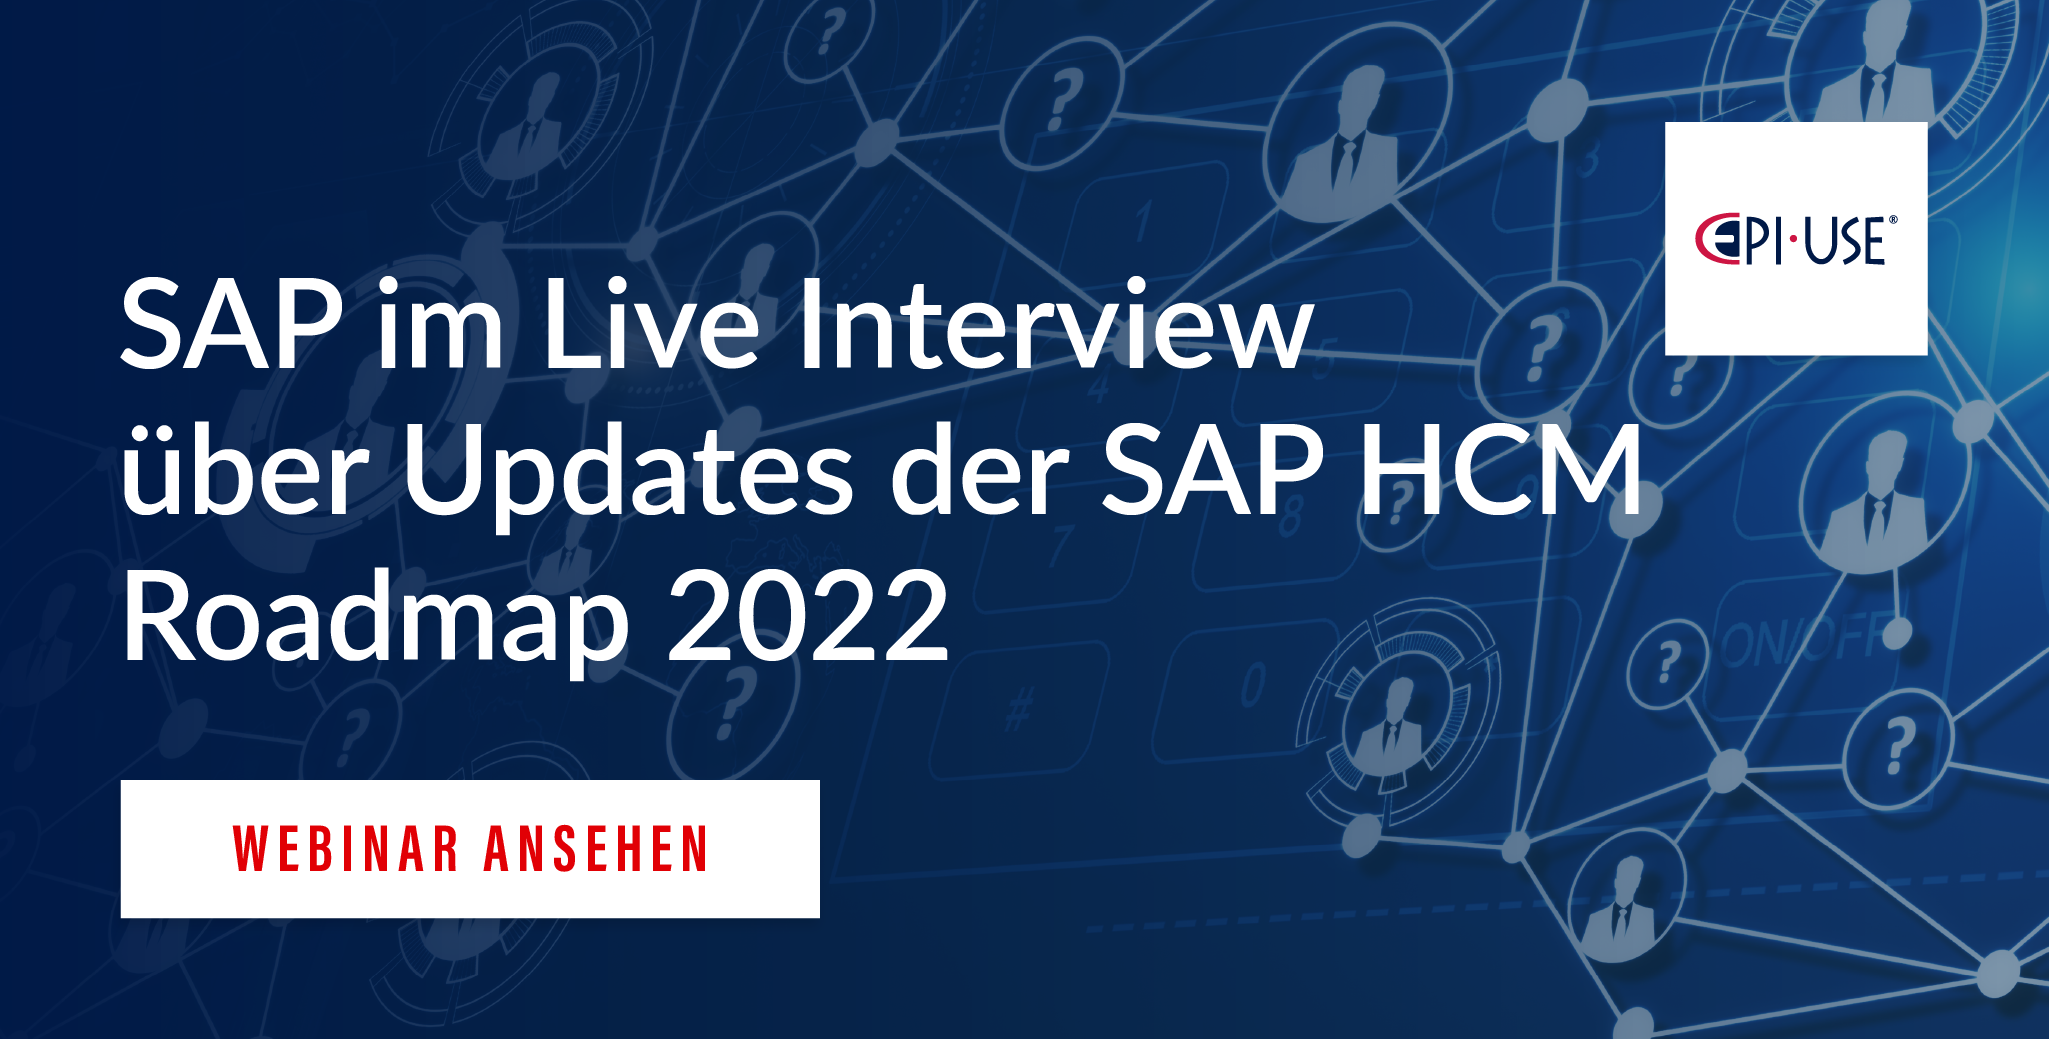 SAP im Live Interview über Updates der SAP HCM Roadmap 2022_V2